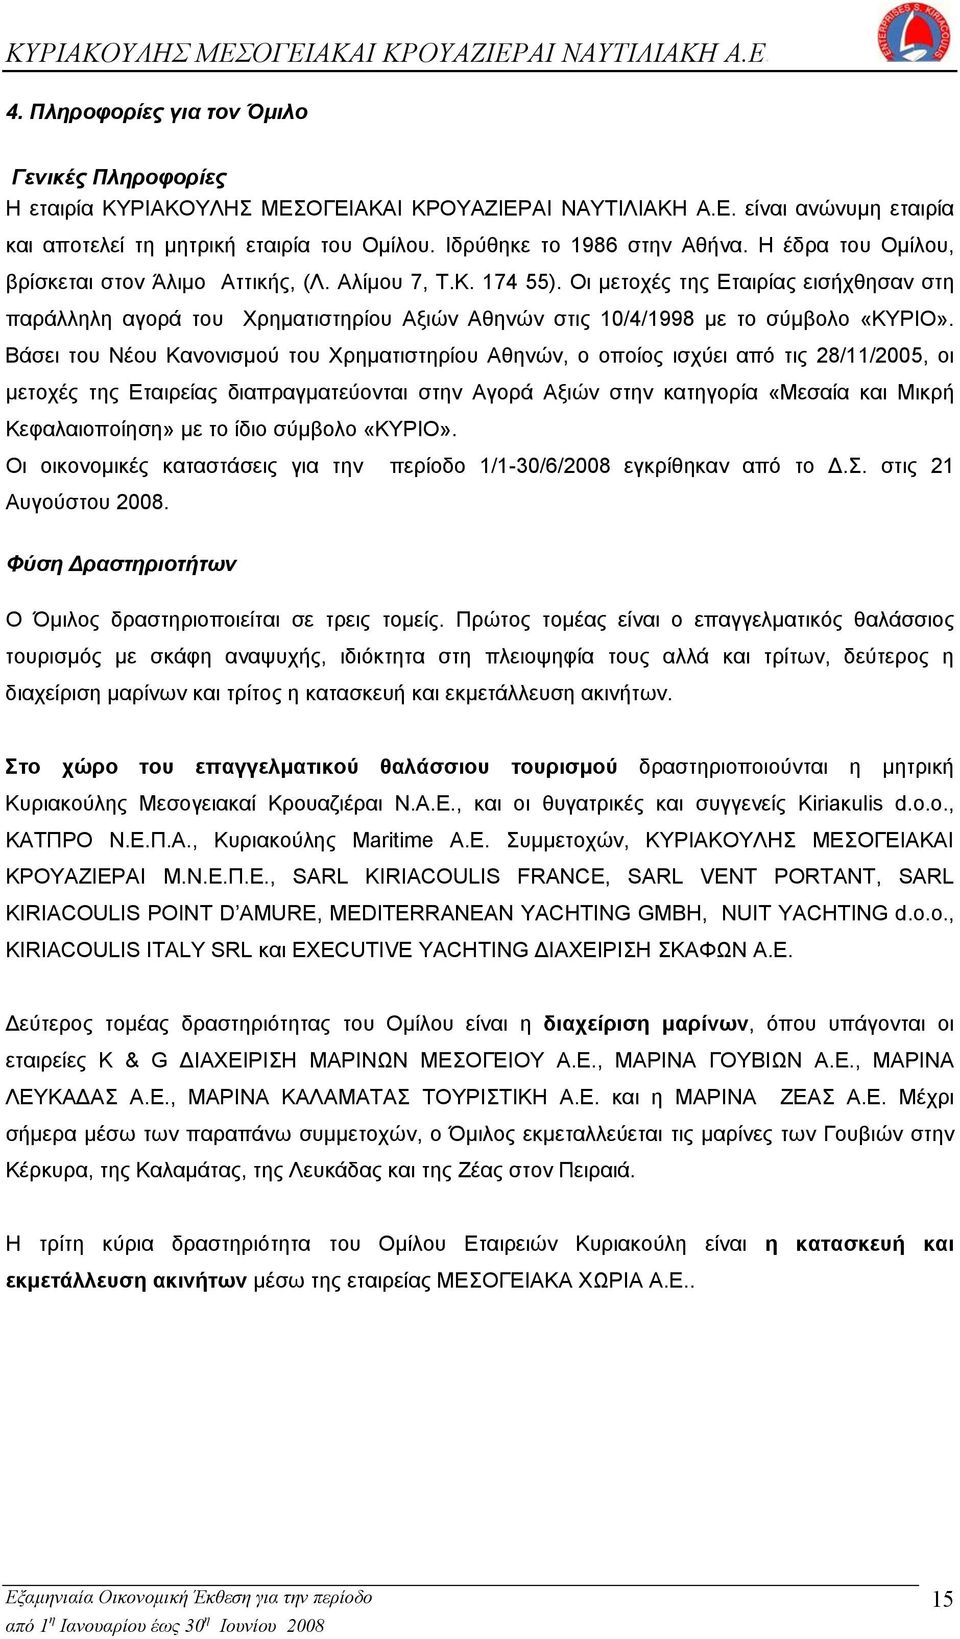 Οι μετοχές της Εταιρίας εισήχθησαν στη παράλληλη αγορά του Χρηματιστηρίου Αξιών Αθηνών στις 10/4/1998 με το σύμβολο «ΚΥΡΙΟ».